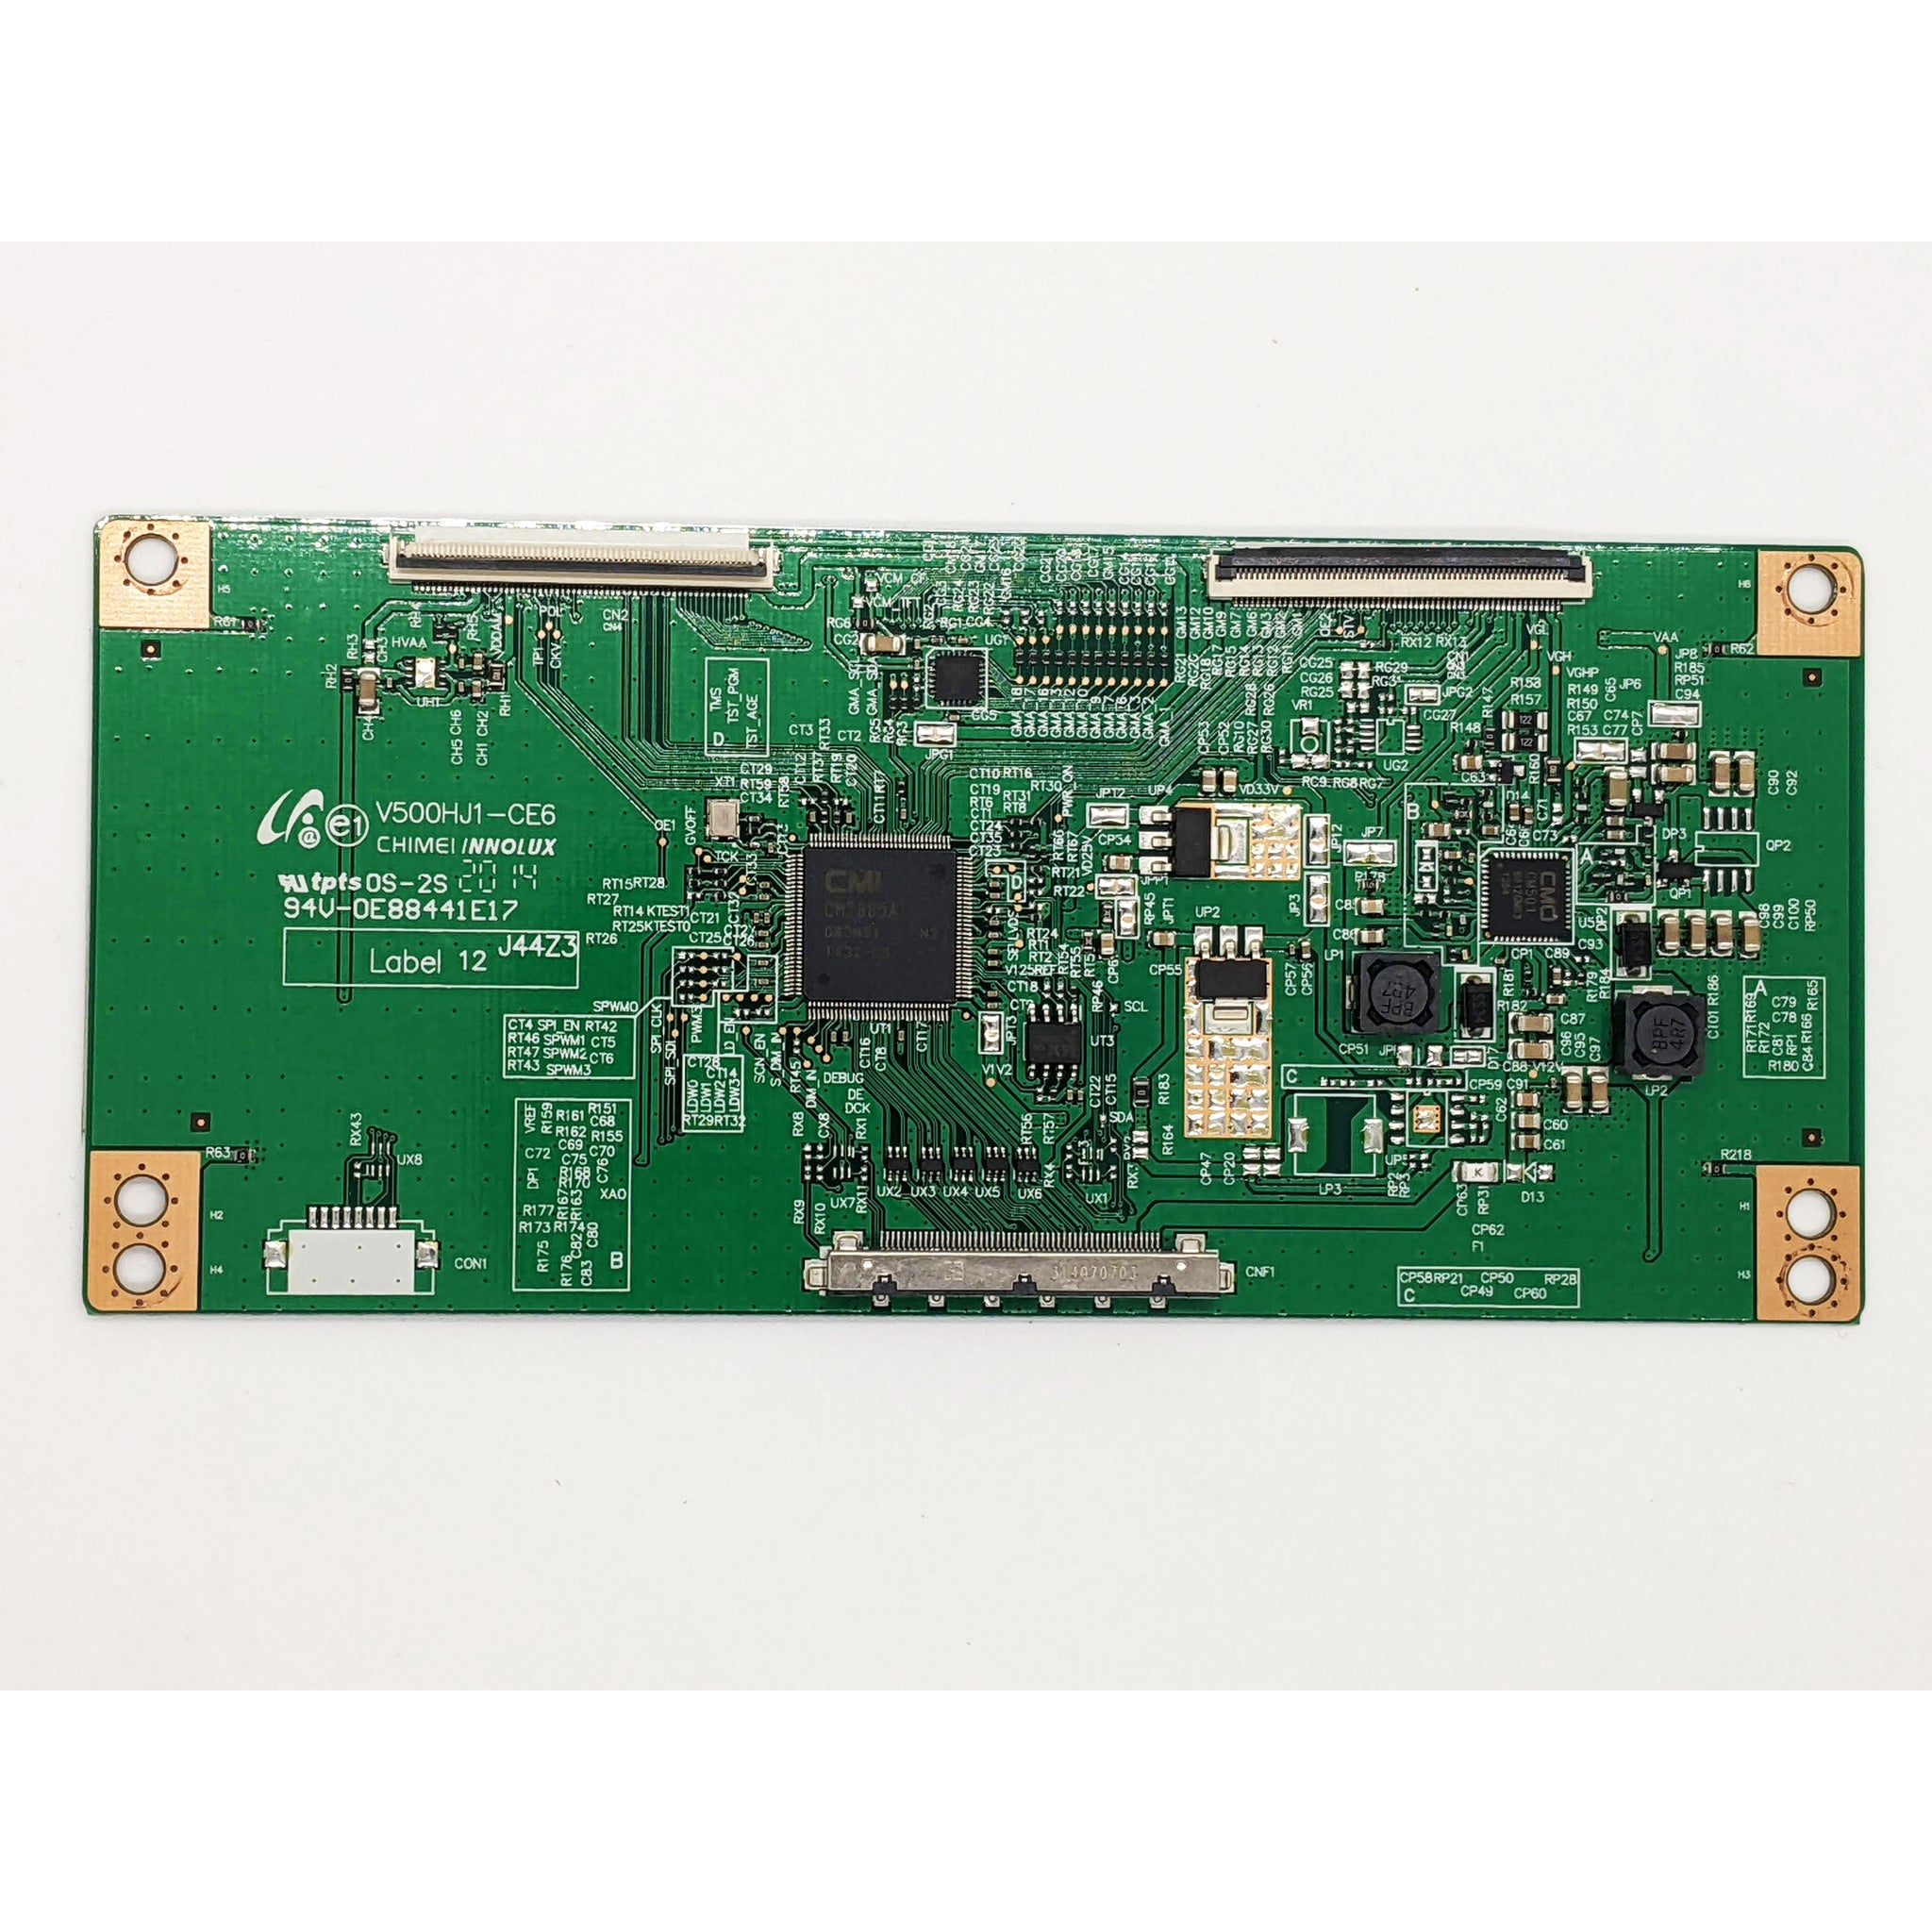 LG V500HJ1-CE6 T-Con Board